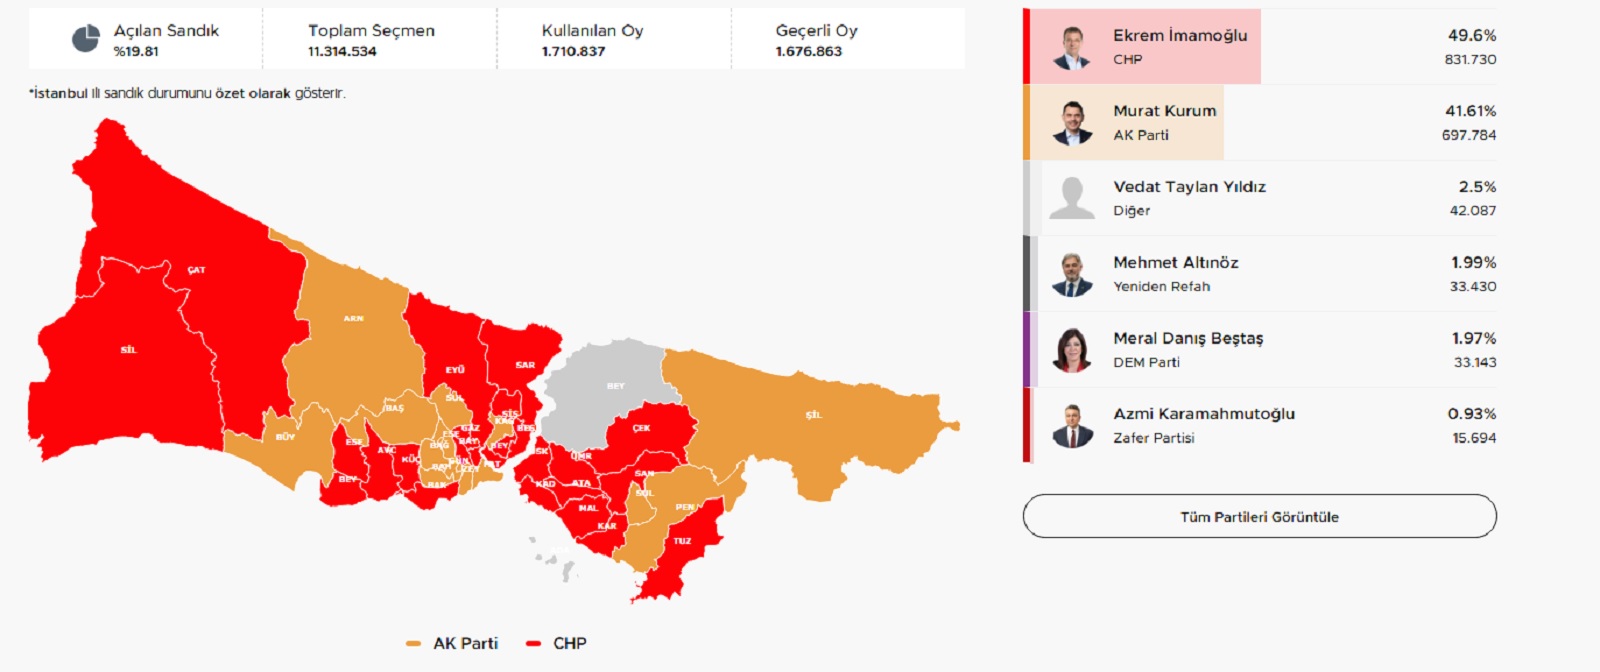 Τα πρώτα εκλογικά αποτελέσματα από τις δημοτικές εκλογές στην Κωνσταντινούπολη